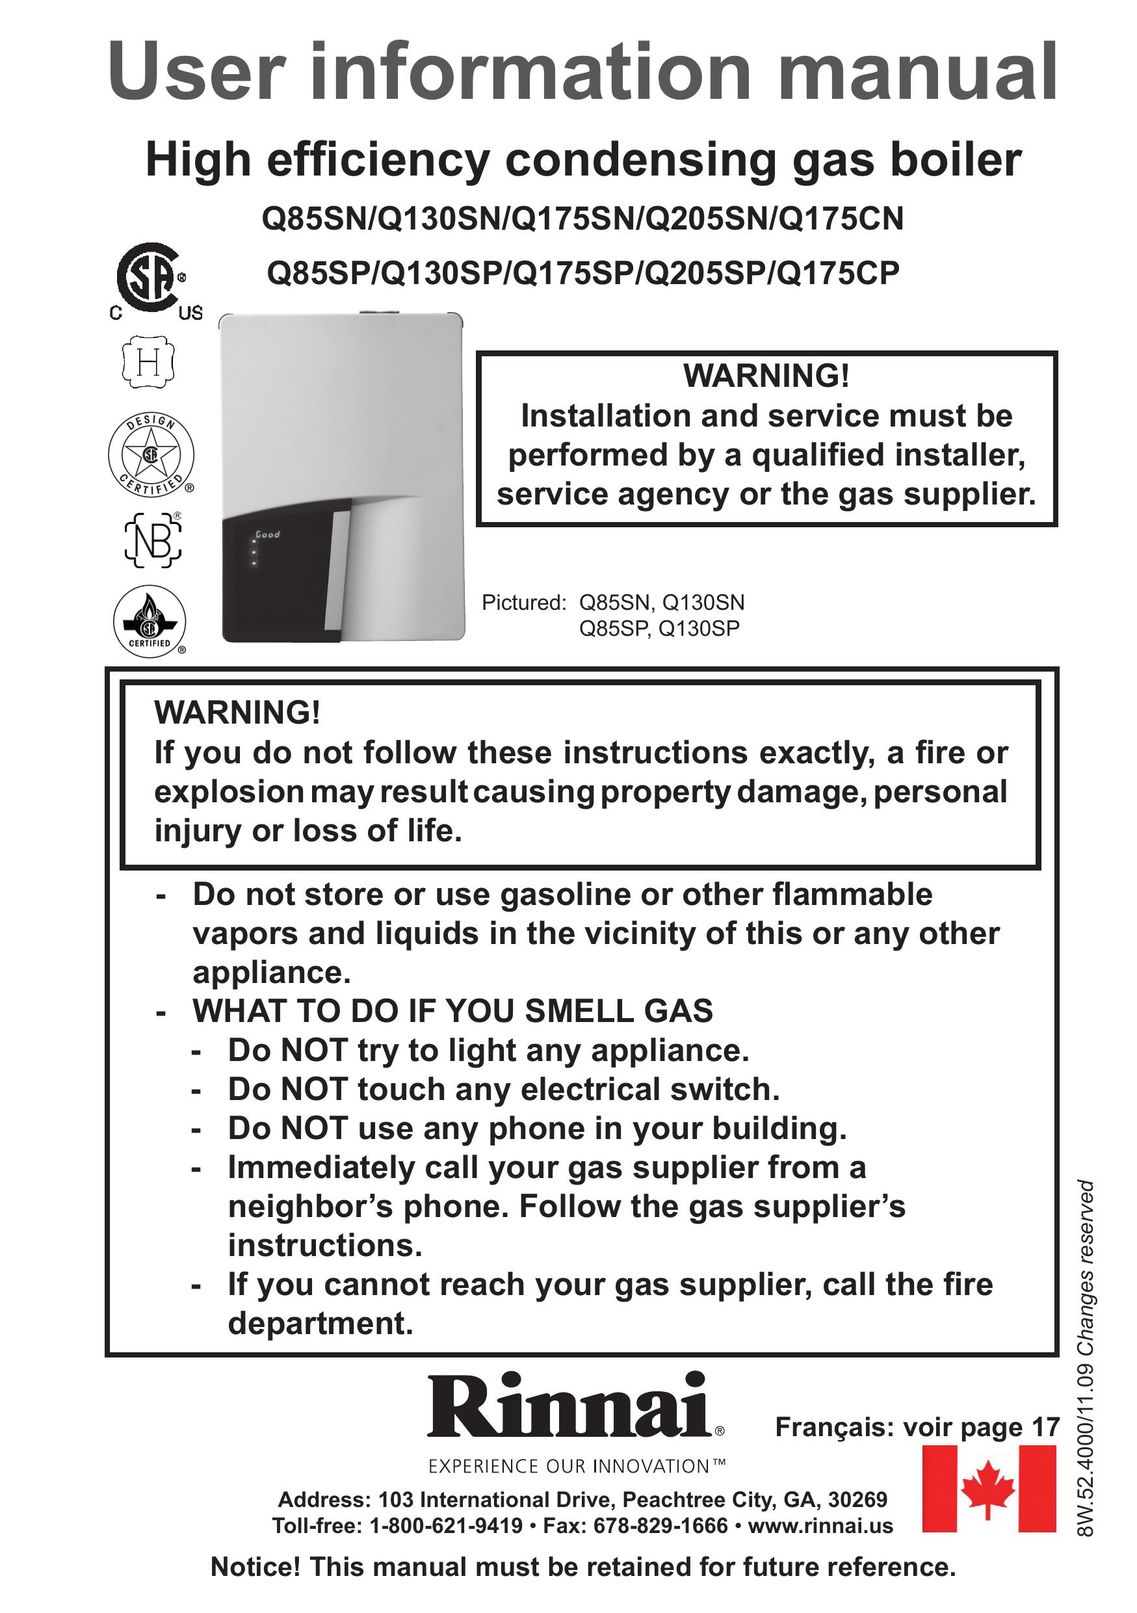 Rinnai Q205SP Boiler User Manual